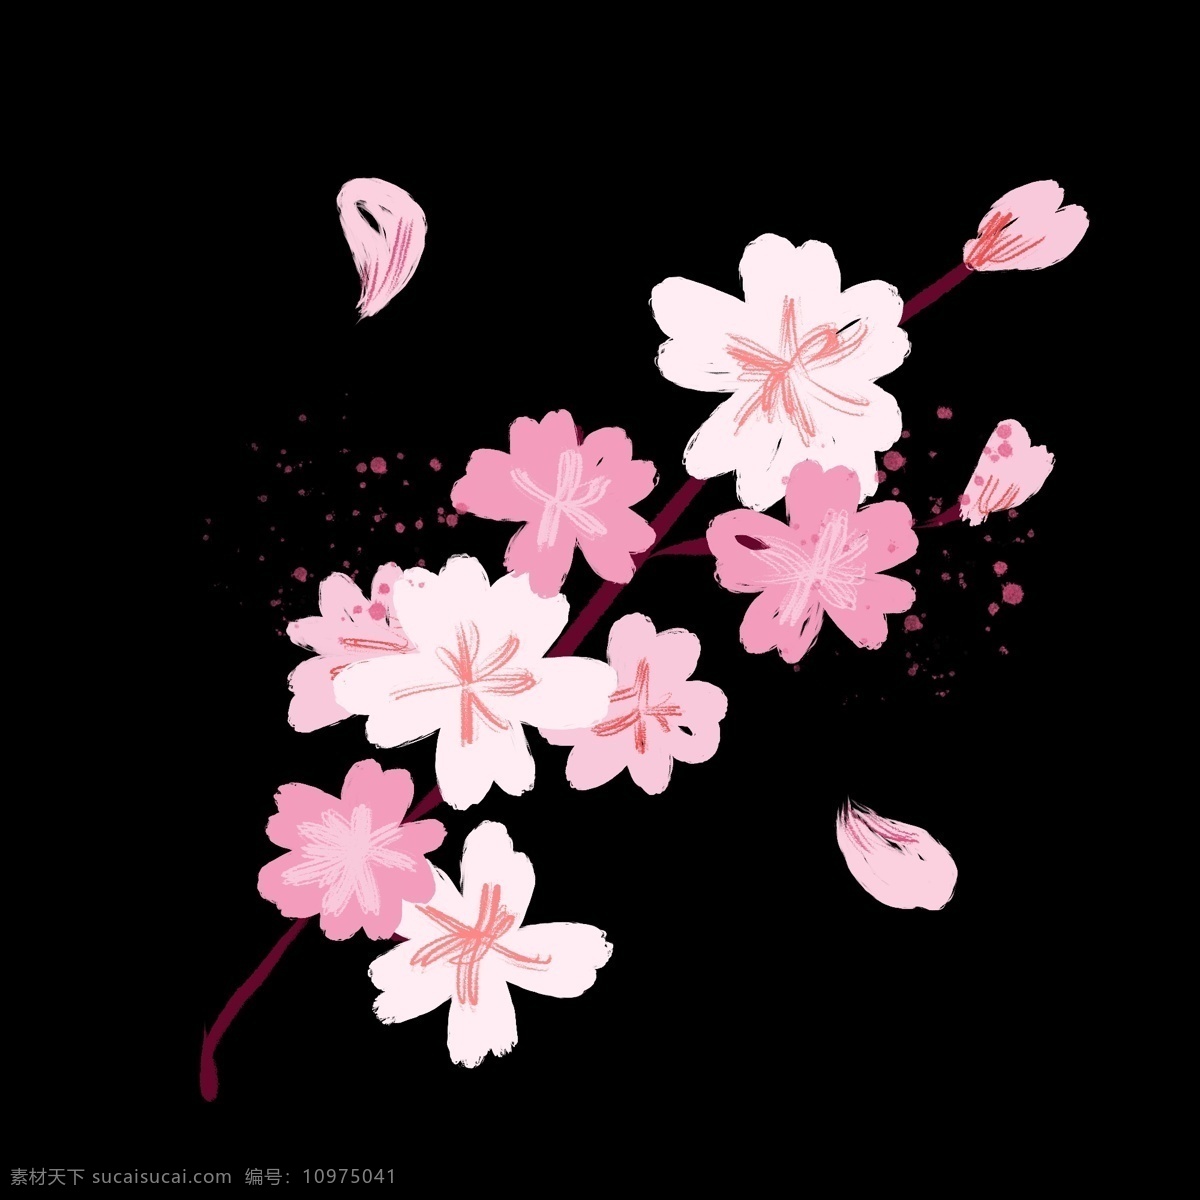 盛开 粉色 樱花 插画 盛开的樱花 卡通插画 樱花插画 花朵插画 鲜花插画 花瓣插画 春天的樱花